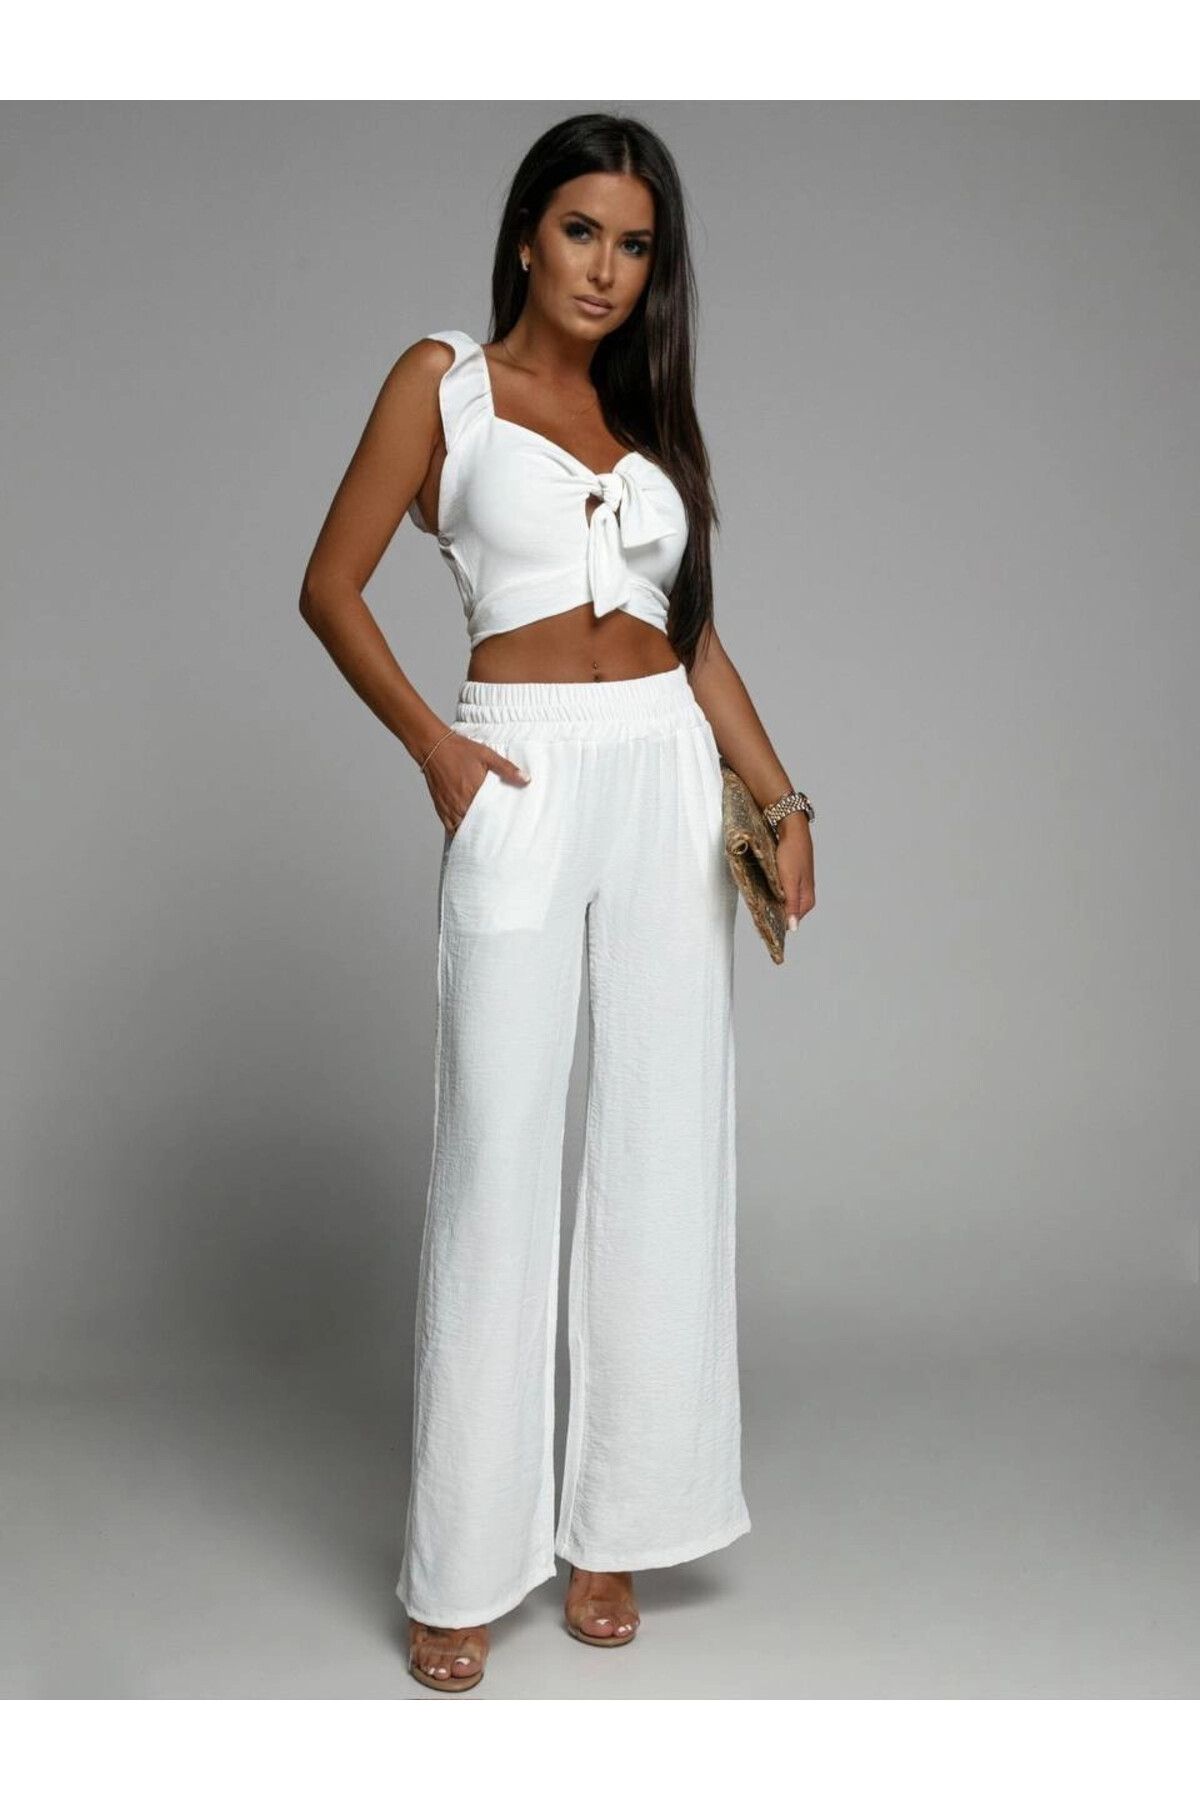 hazelin Kadın Beyaz İthal Keten Kumaş Fiyonk Detaylı Askılı Crop Pantolon İkili Takım HZL24S-FRY122081